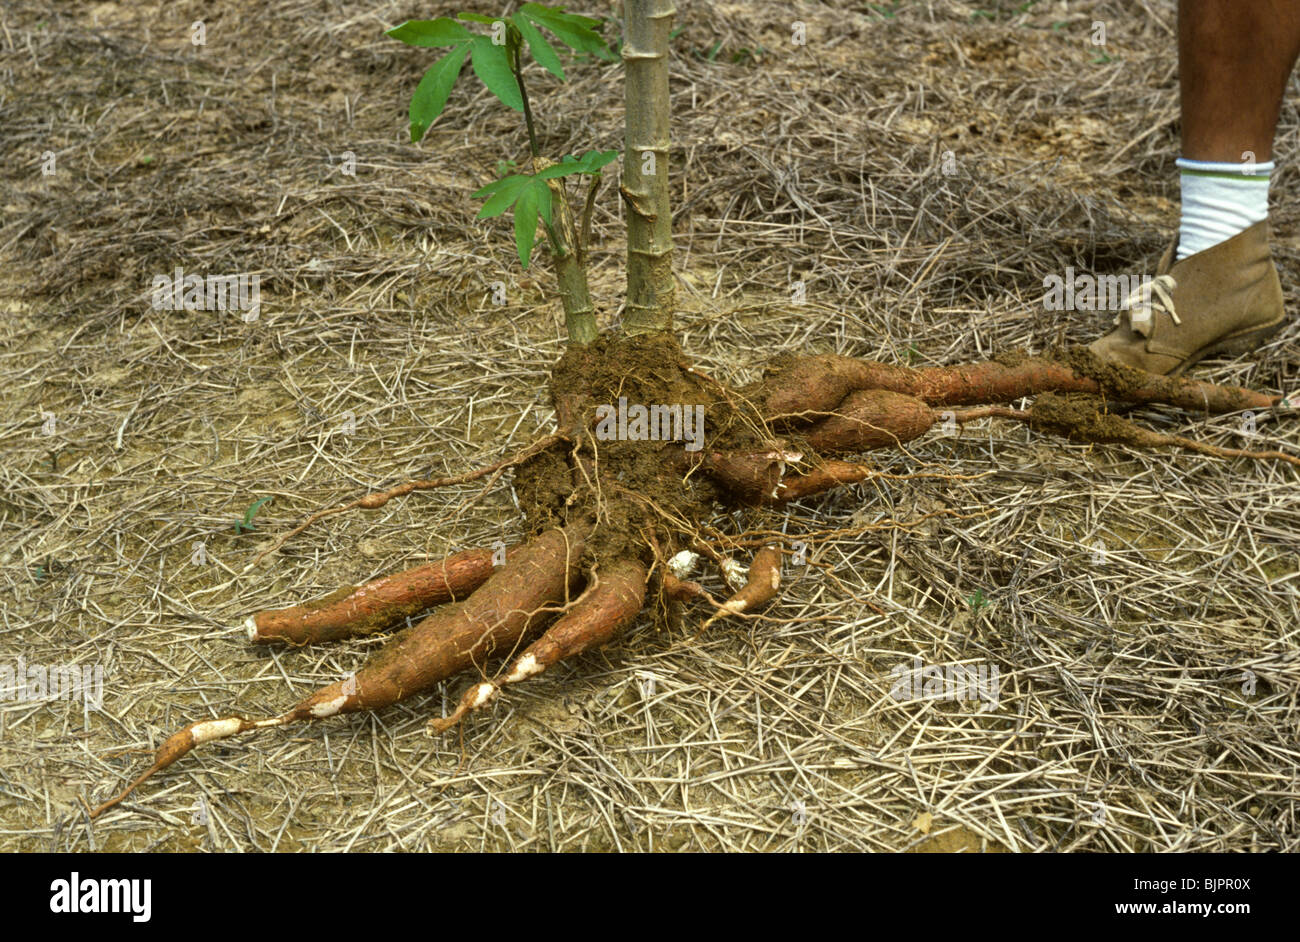 Le manioc ou de manioc (Manihot esculenta) root avec le pied d'un homme pour montrer la taille Banque D'Images